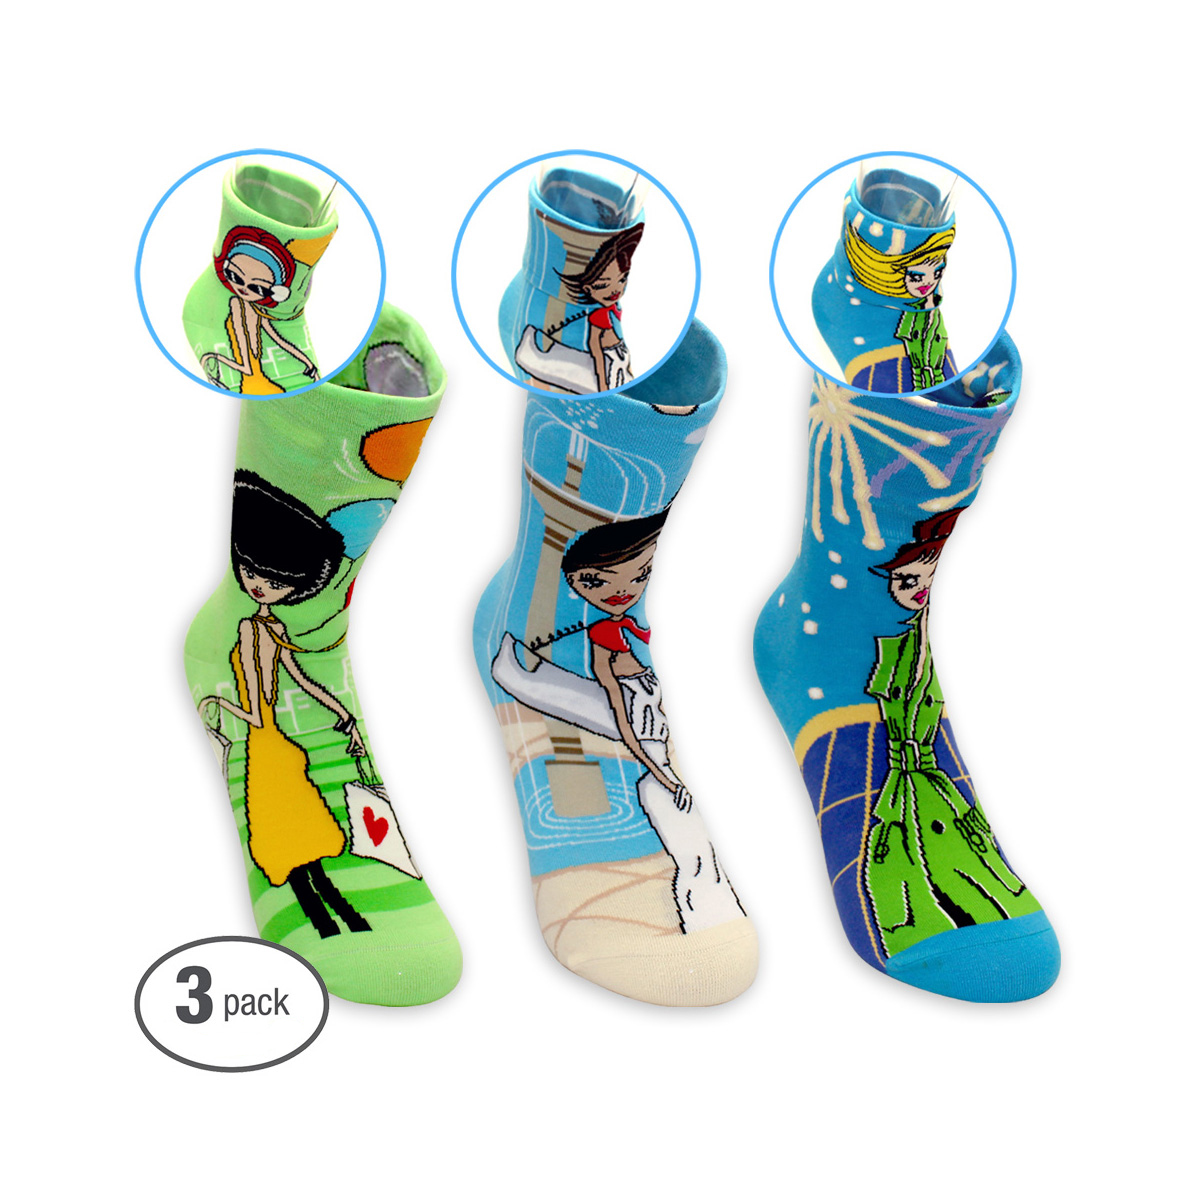 DKGP City Fashion Lady Socks, 9''-9.75'', Size M (3 Color Set)